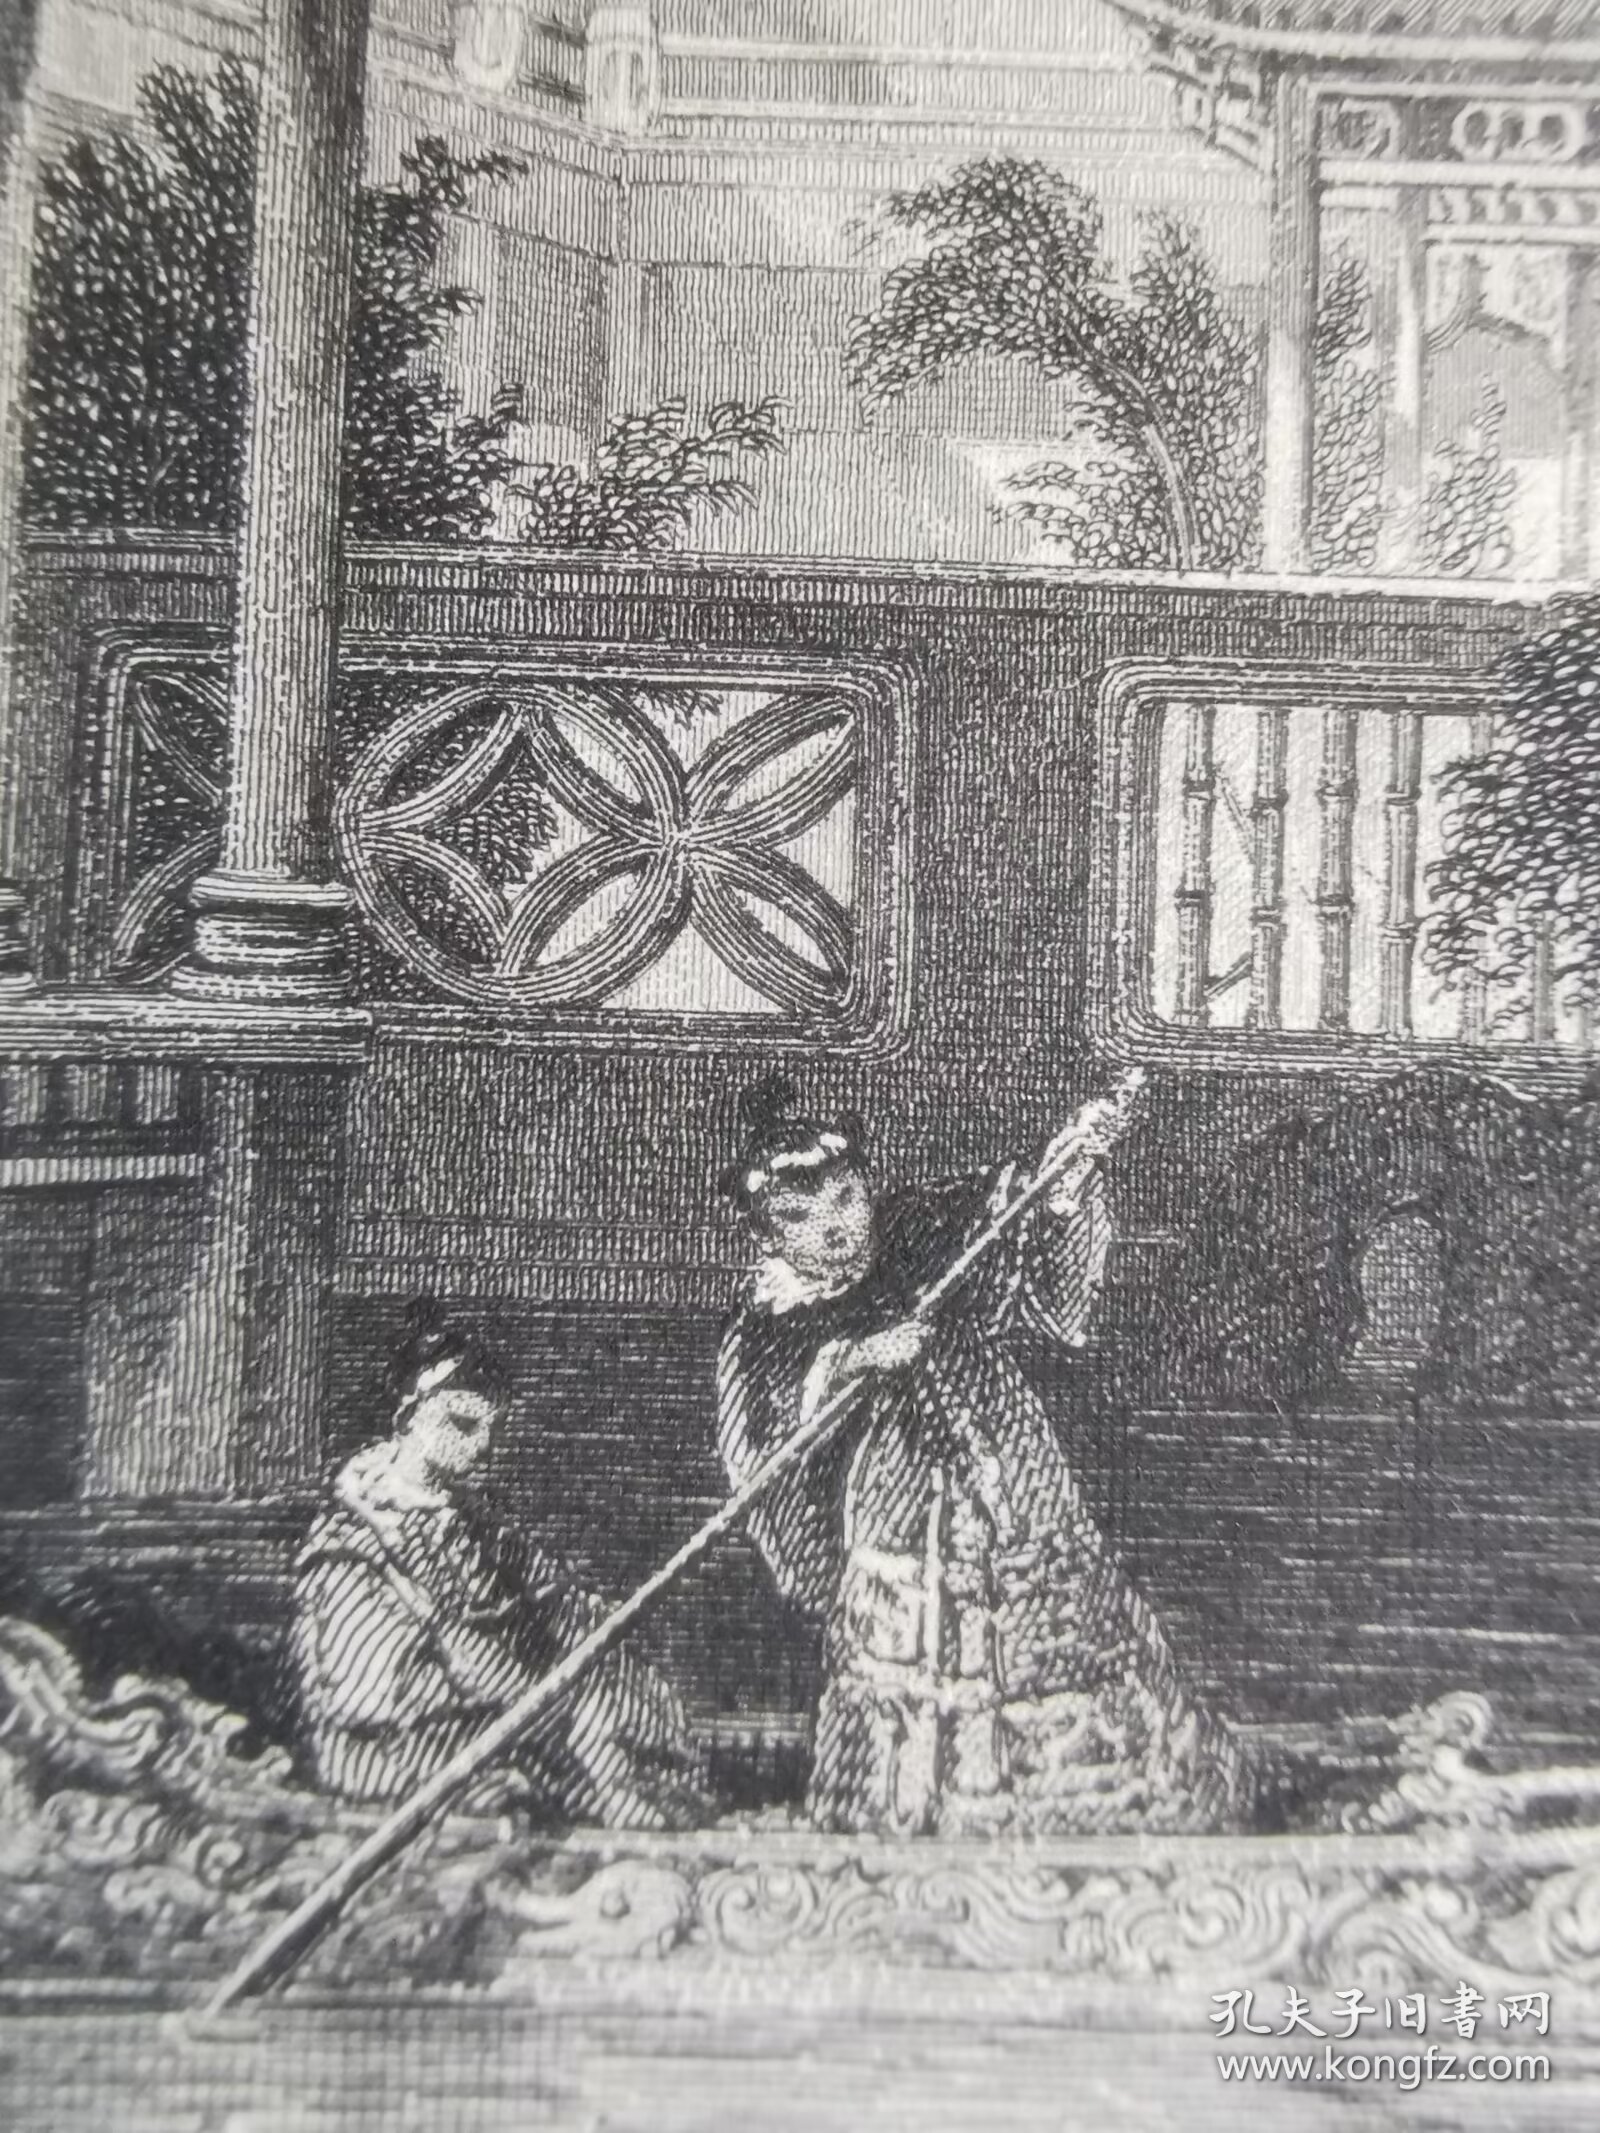 广州园林水榭 1843年托马斯阿罗姆Thomas allmo大清帝国图集